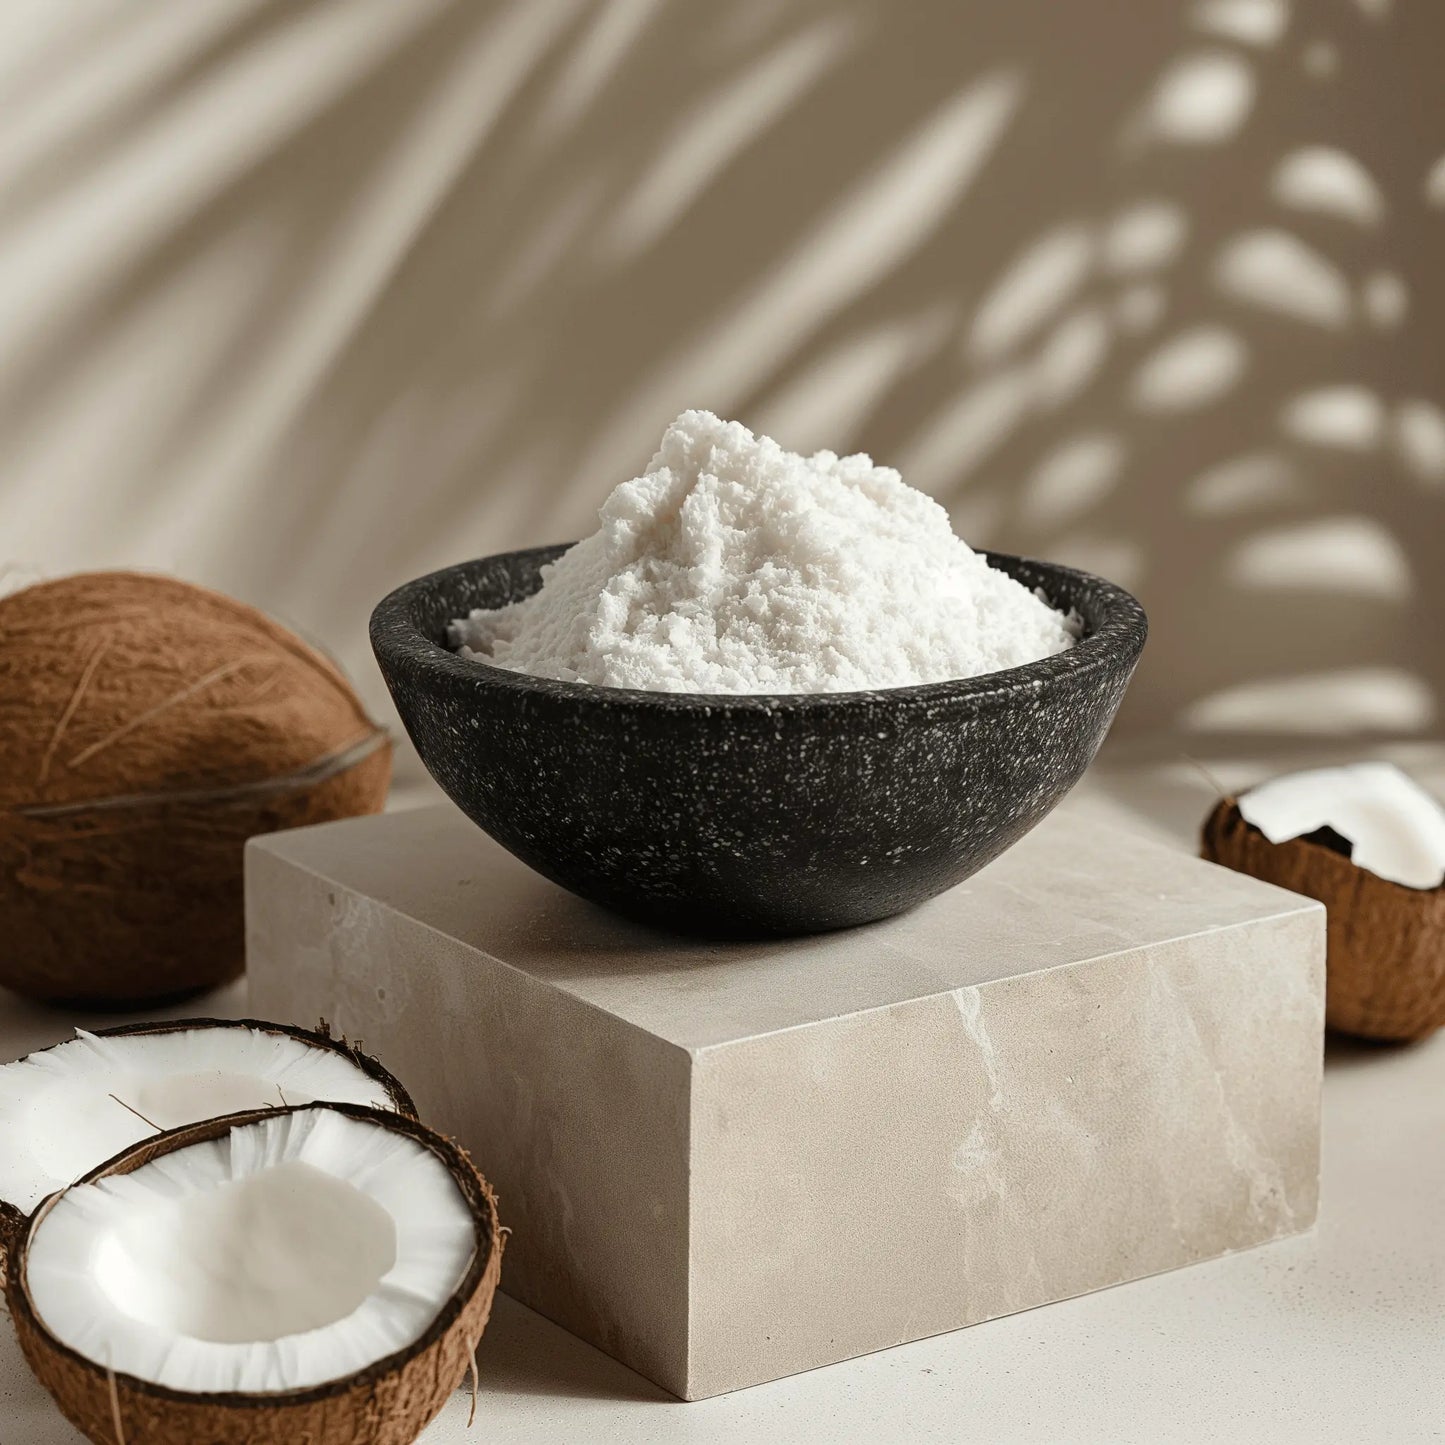 Lait de coco en poudre neutre et végétalien 40% de matière grasse avec maltodextrine